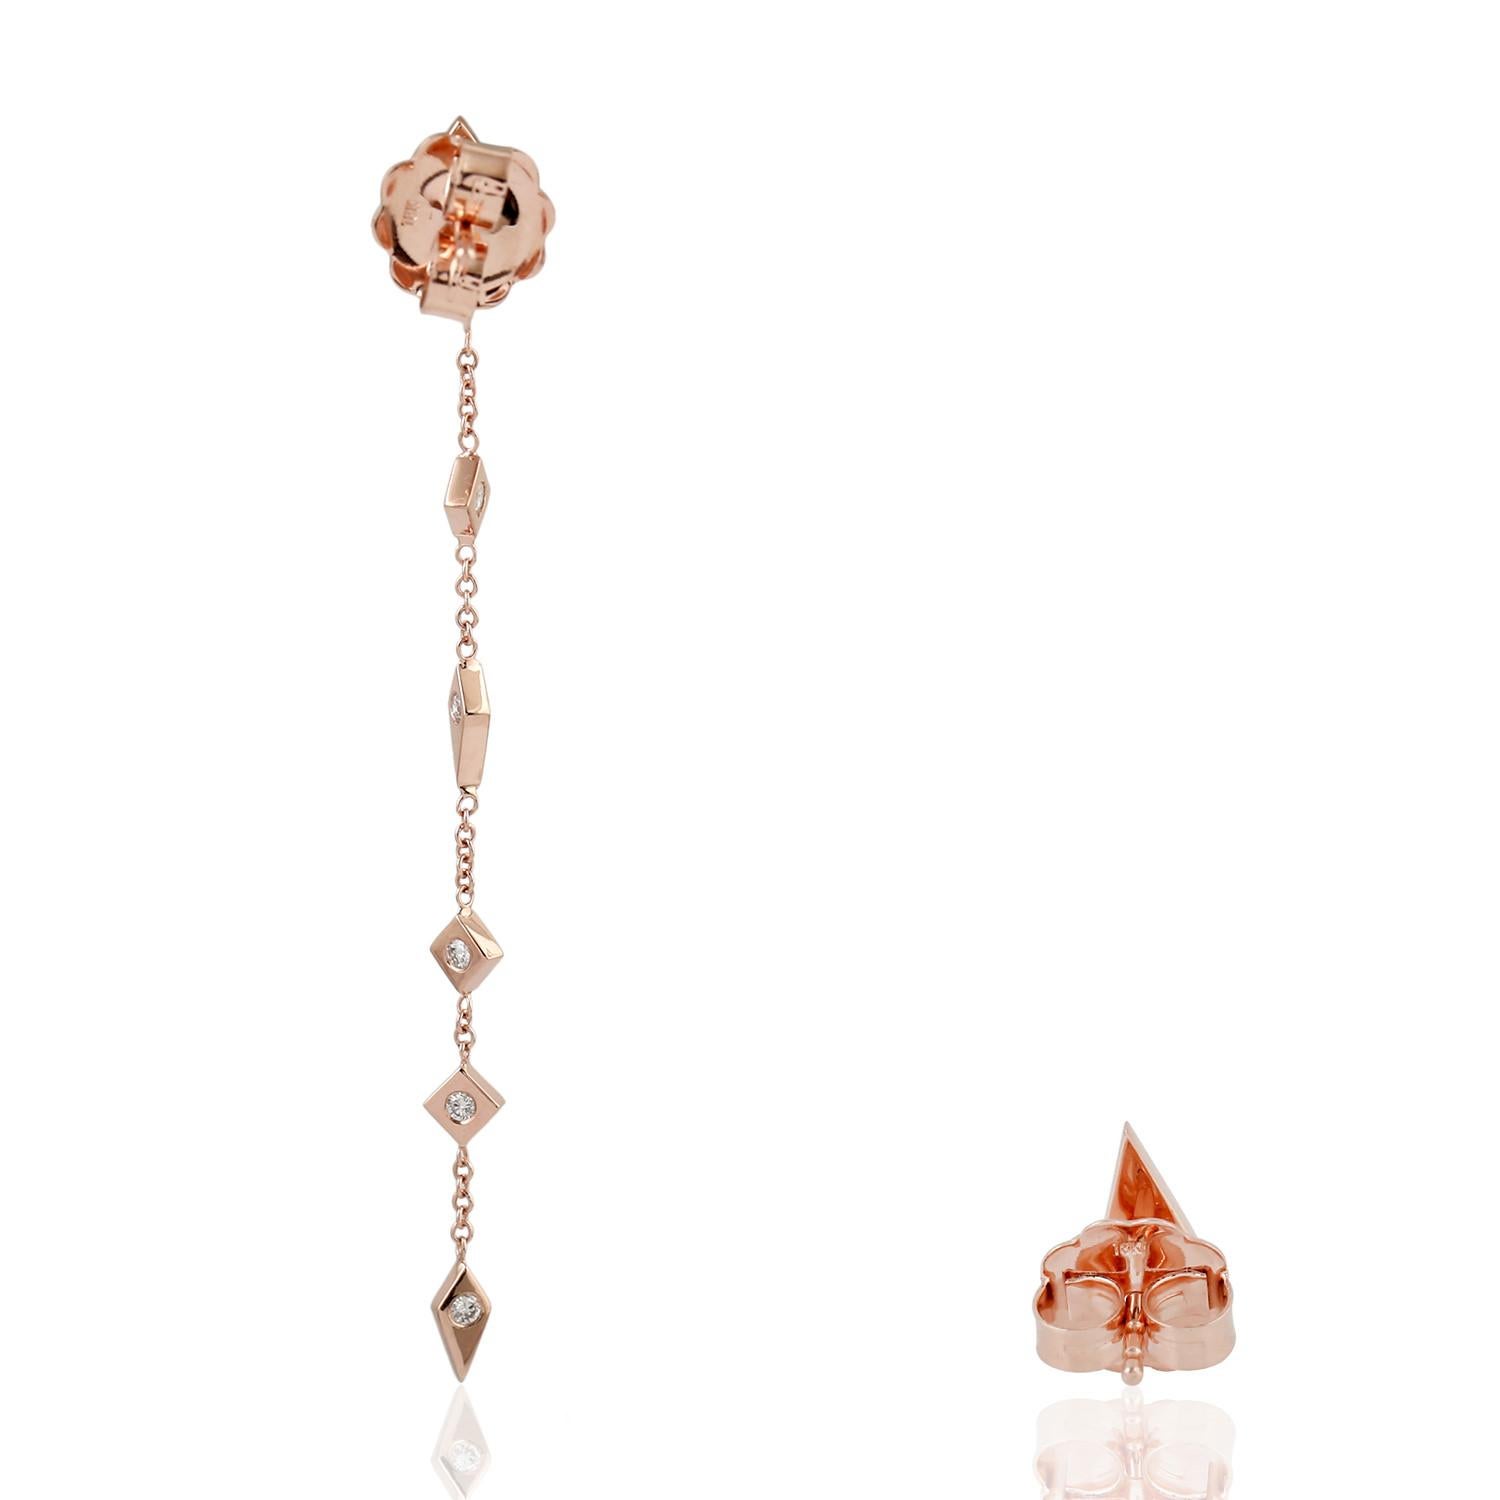 Diese wunderschönen Ketten-Ohrringe sind aus 18-karätigem Gelbgold gegossen und von Hand mit 0,31 Karat glitzernden Diamanten besetzt.

FOLLOW MEGHNA JEWELS Storefront, um die neueste Kollektion und exklusive Stücke zu sehen. Meghna Jewels ist stolz